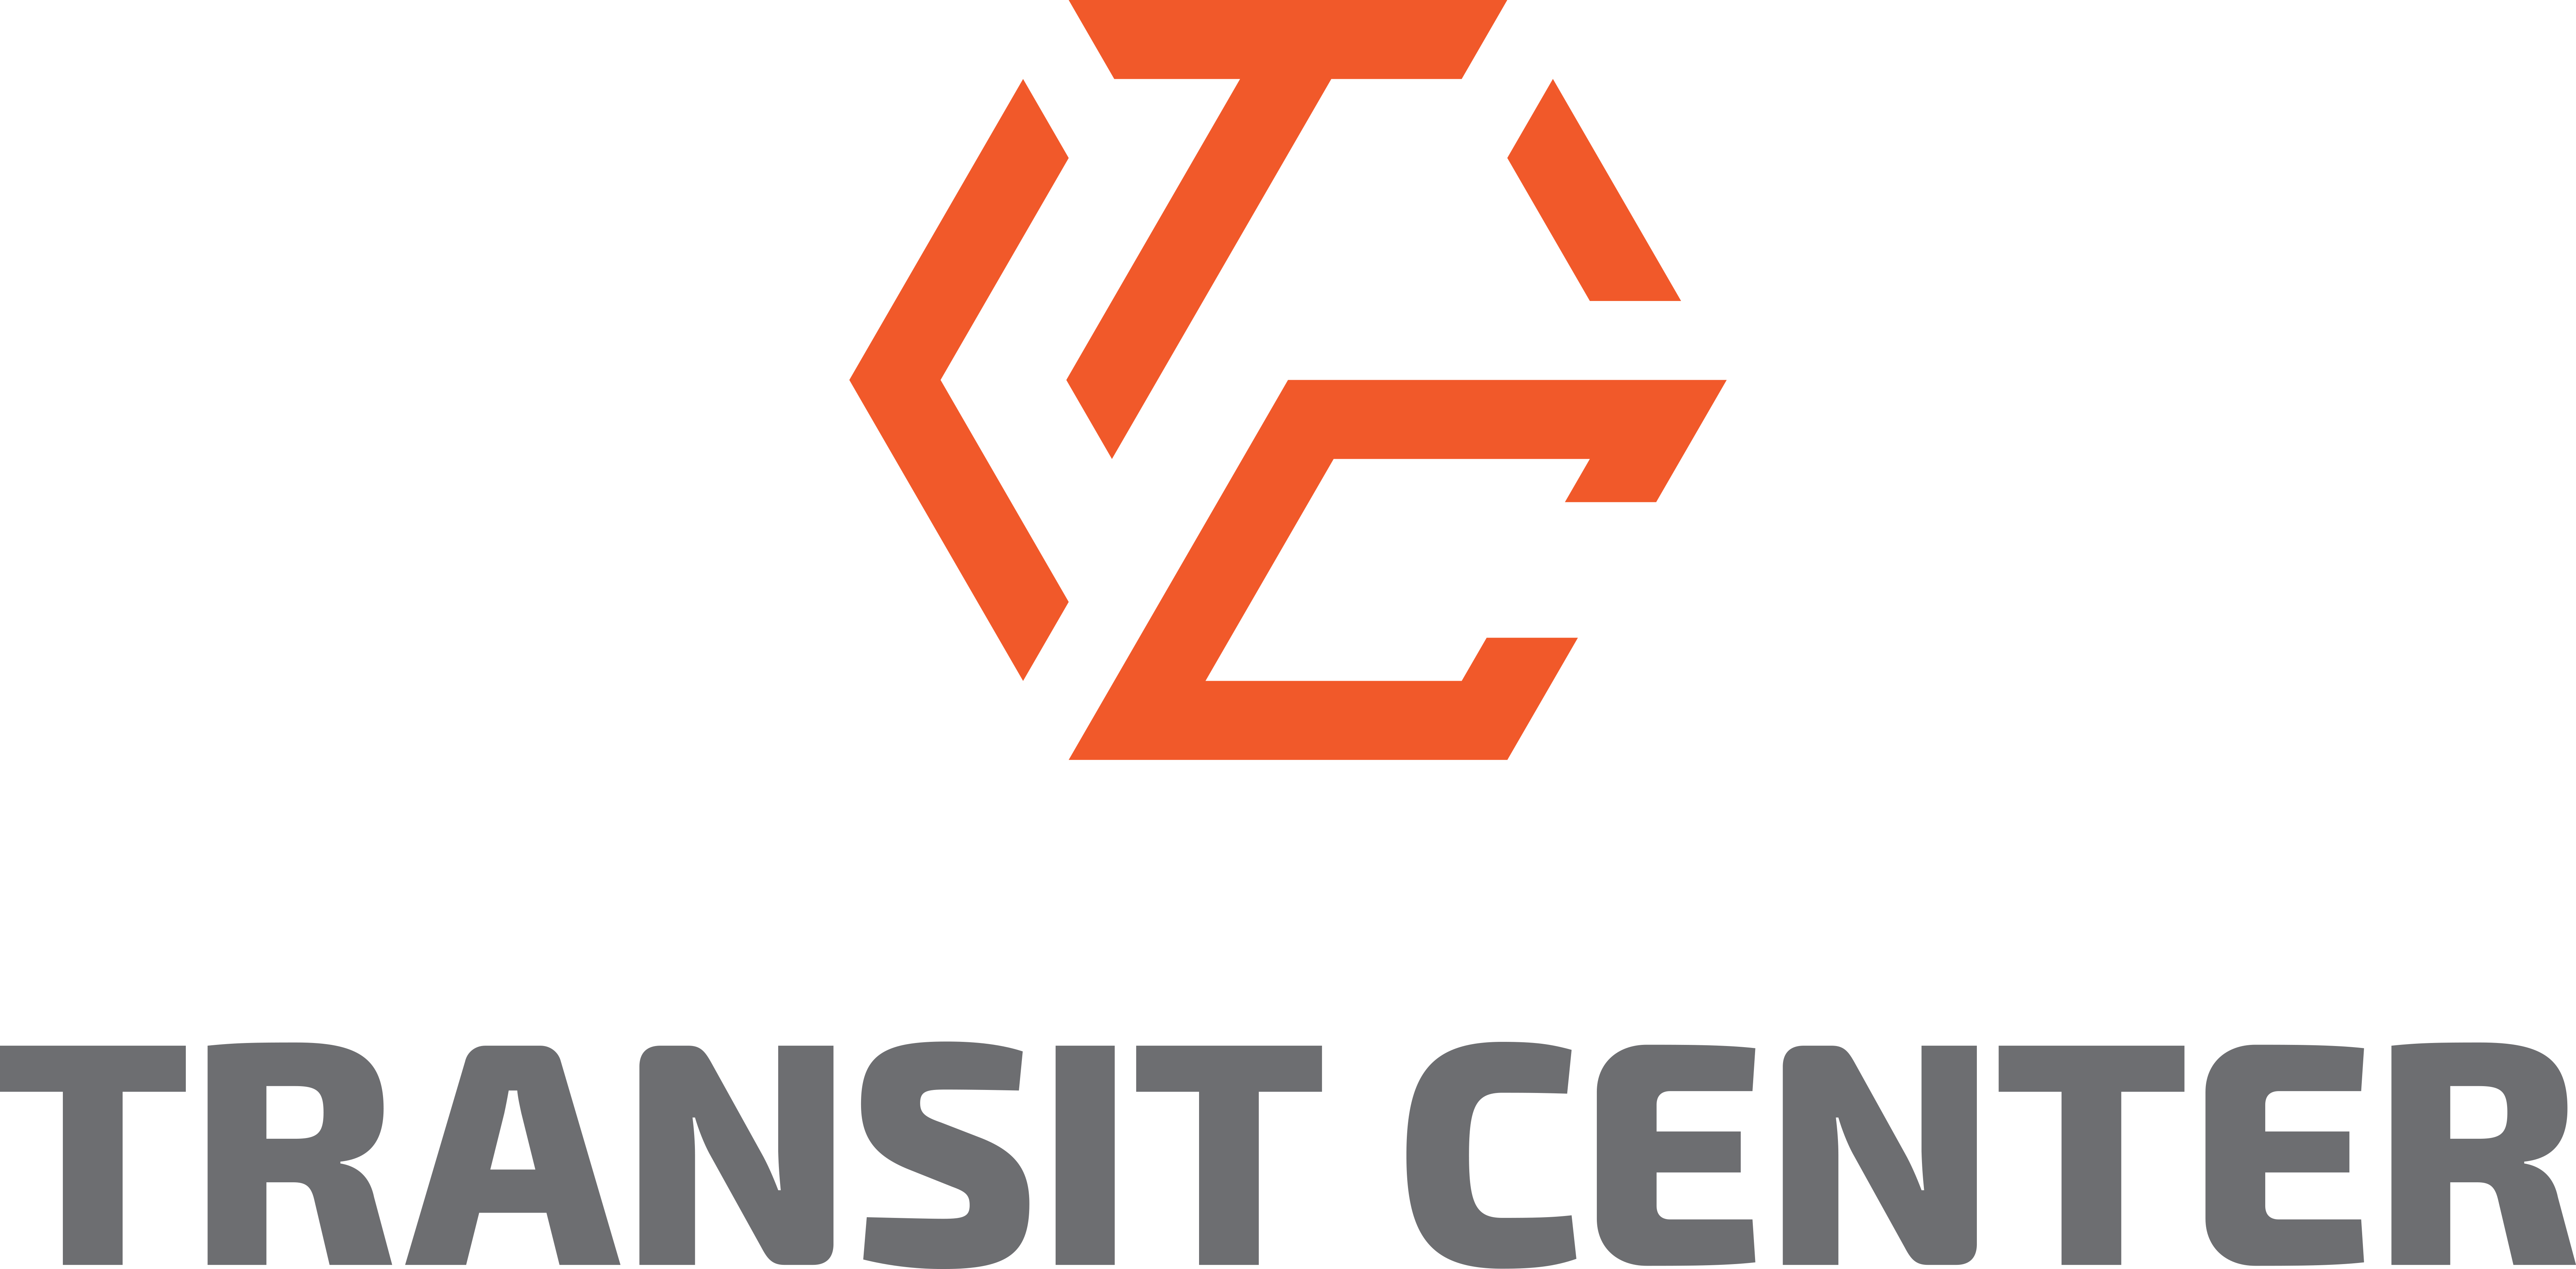 Center Logo - TRANSIT CENTER, LOGO TRANIST CENTER